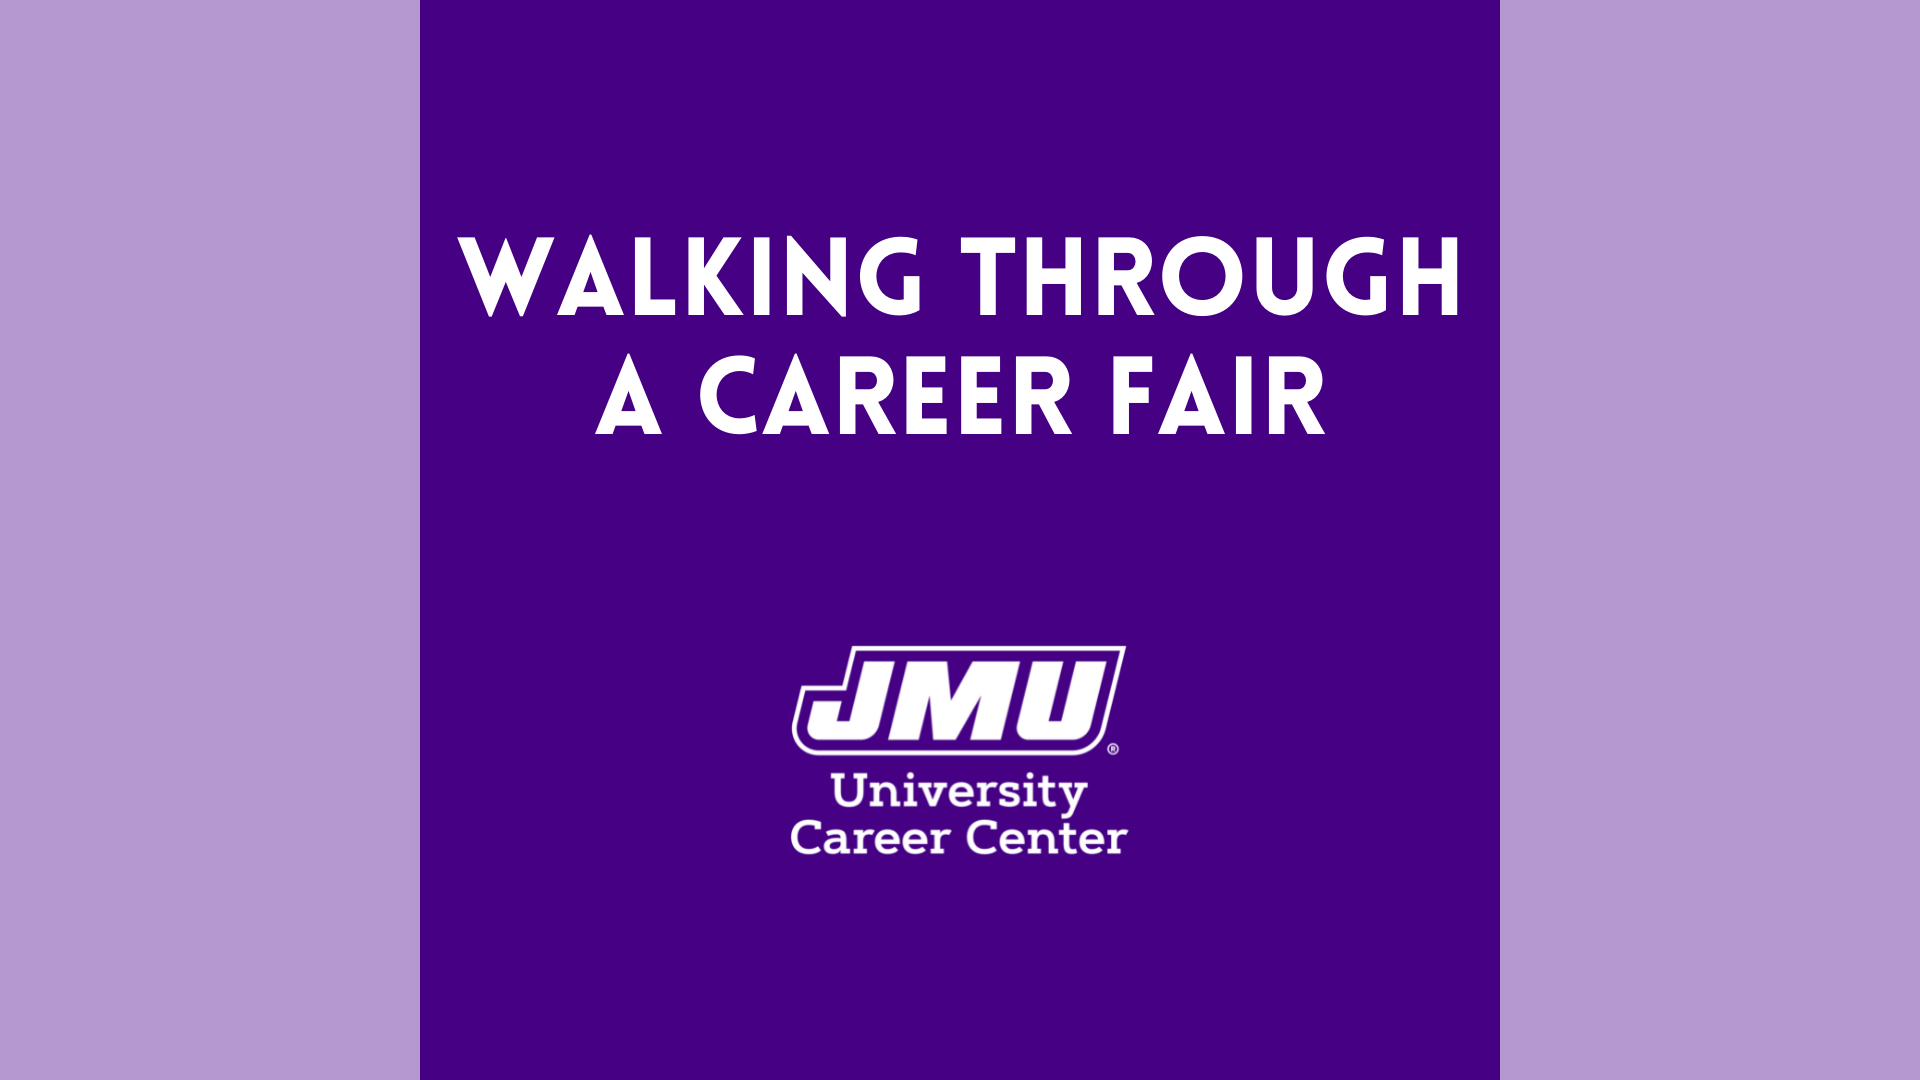 Walking Through a Career Fair at JMU